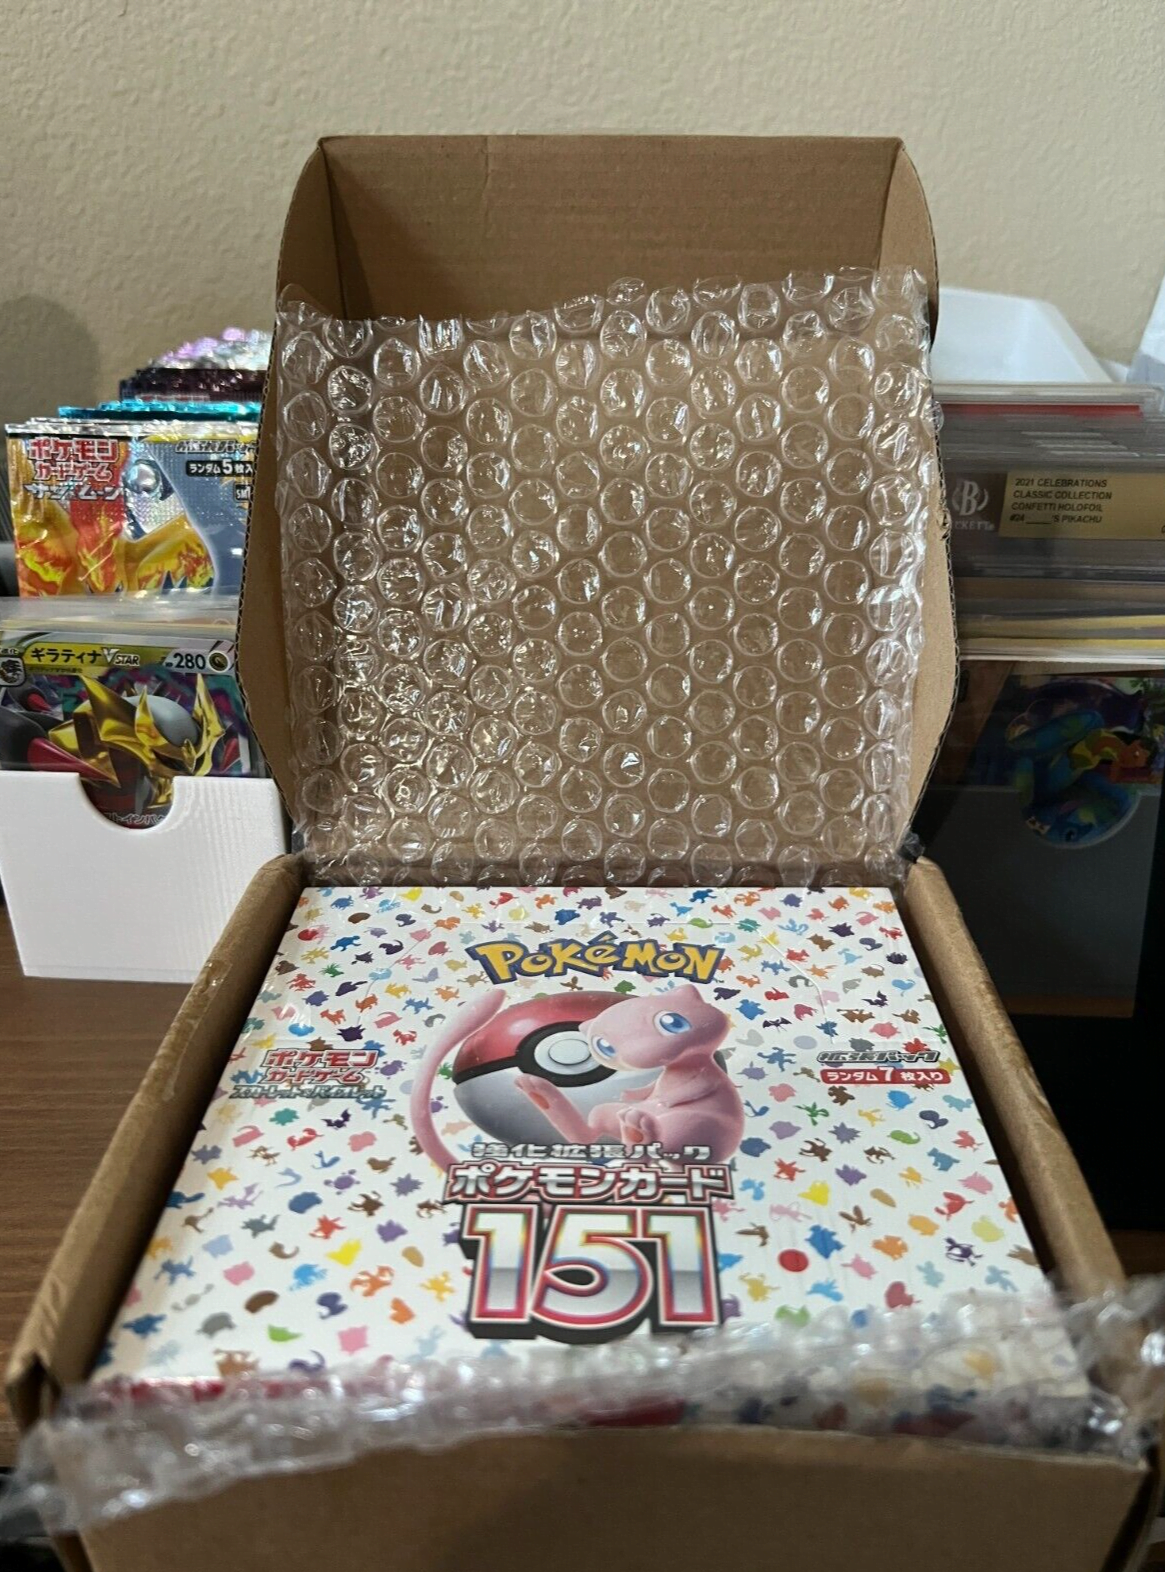 No Shrink /Pokemon Card Game 151 sv2a Booster Pack Box Scarlet & Violet  Japanese